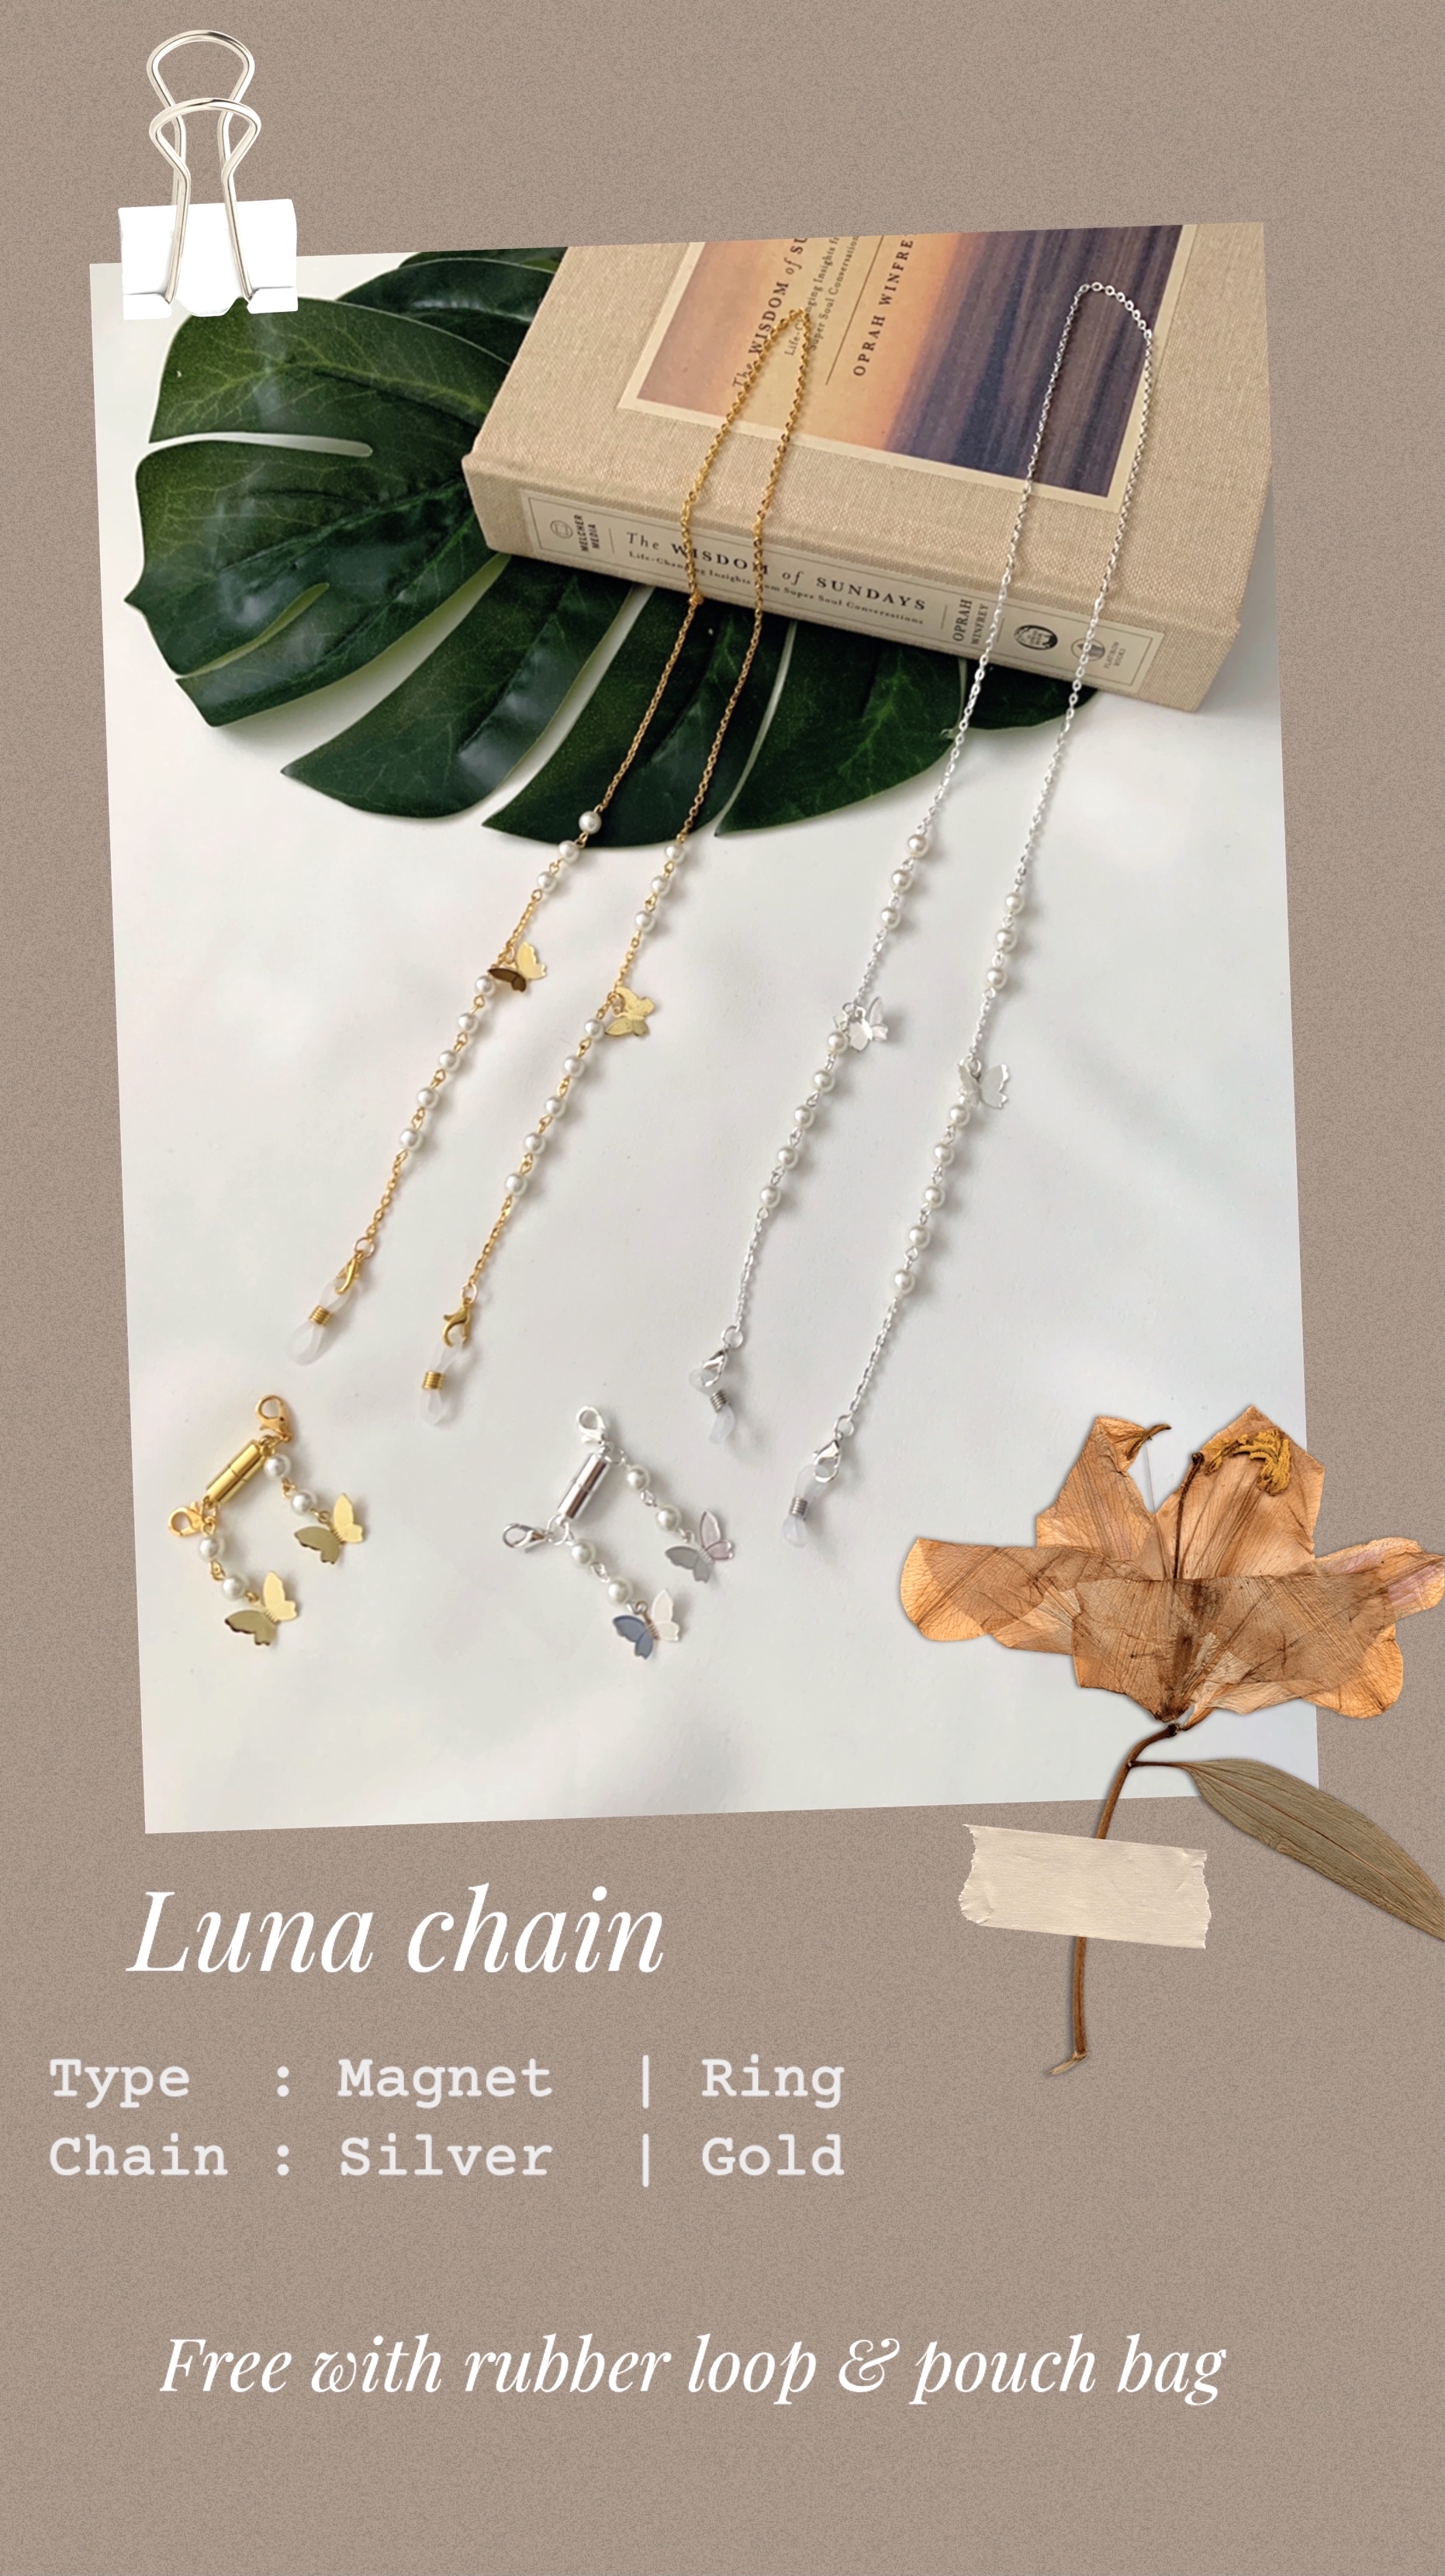 Luna chain